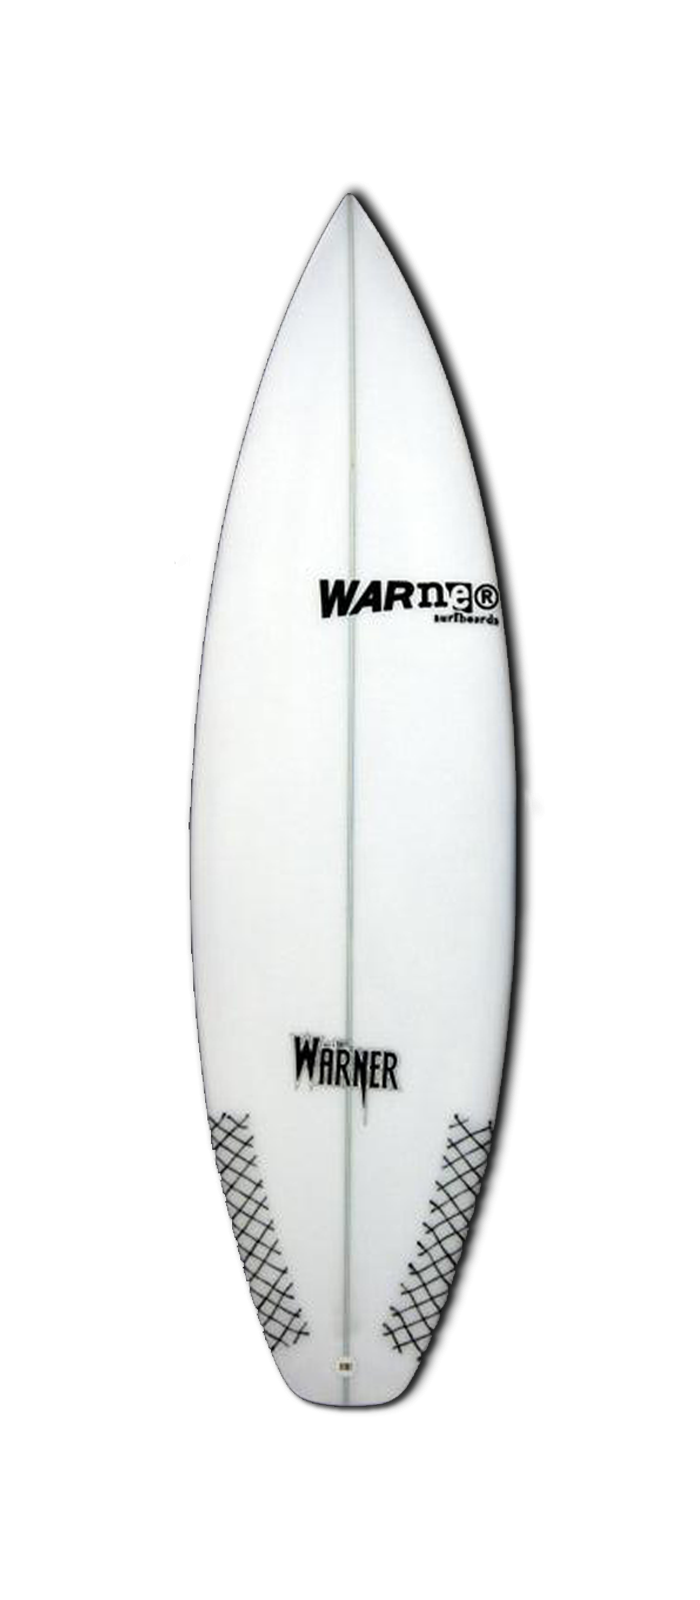 DC surfboard model